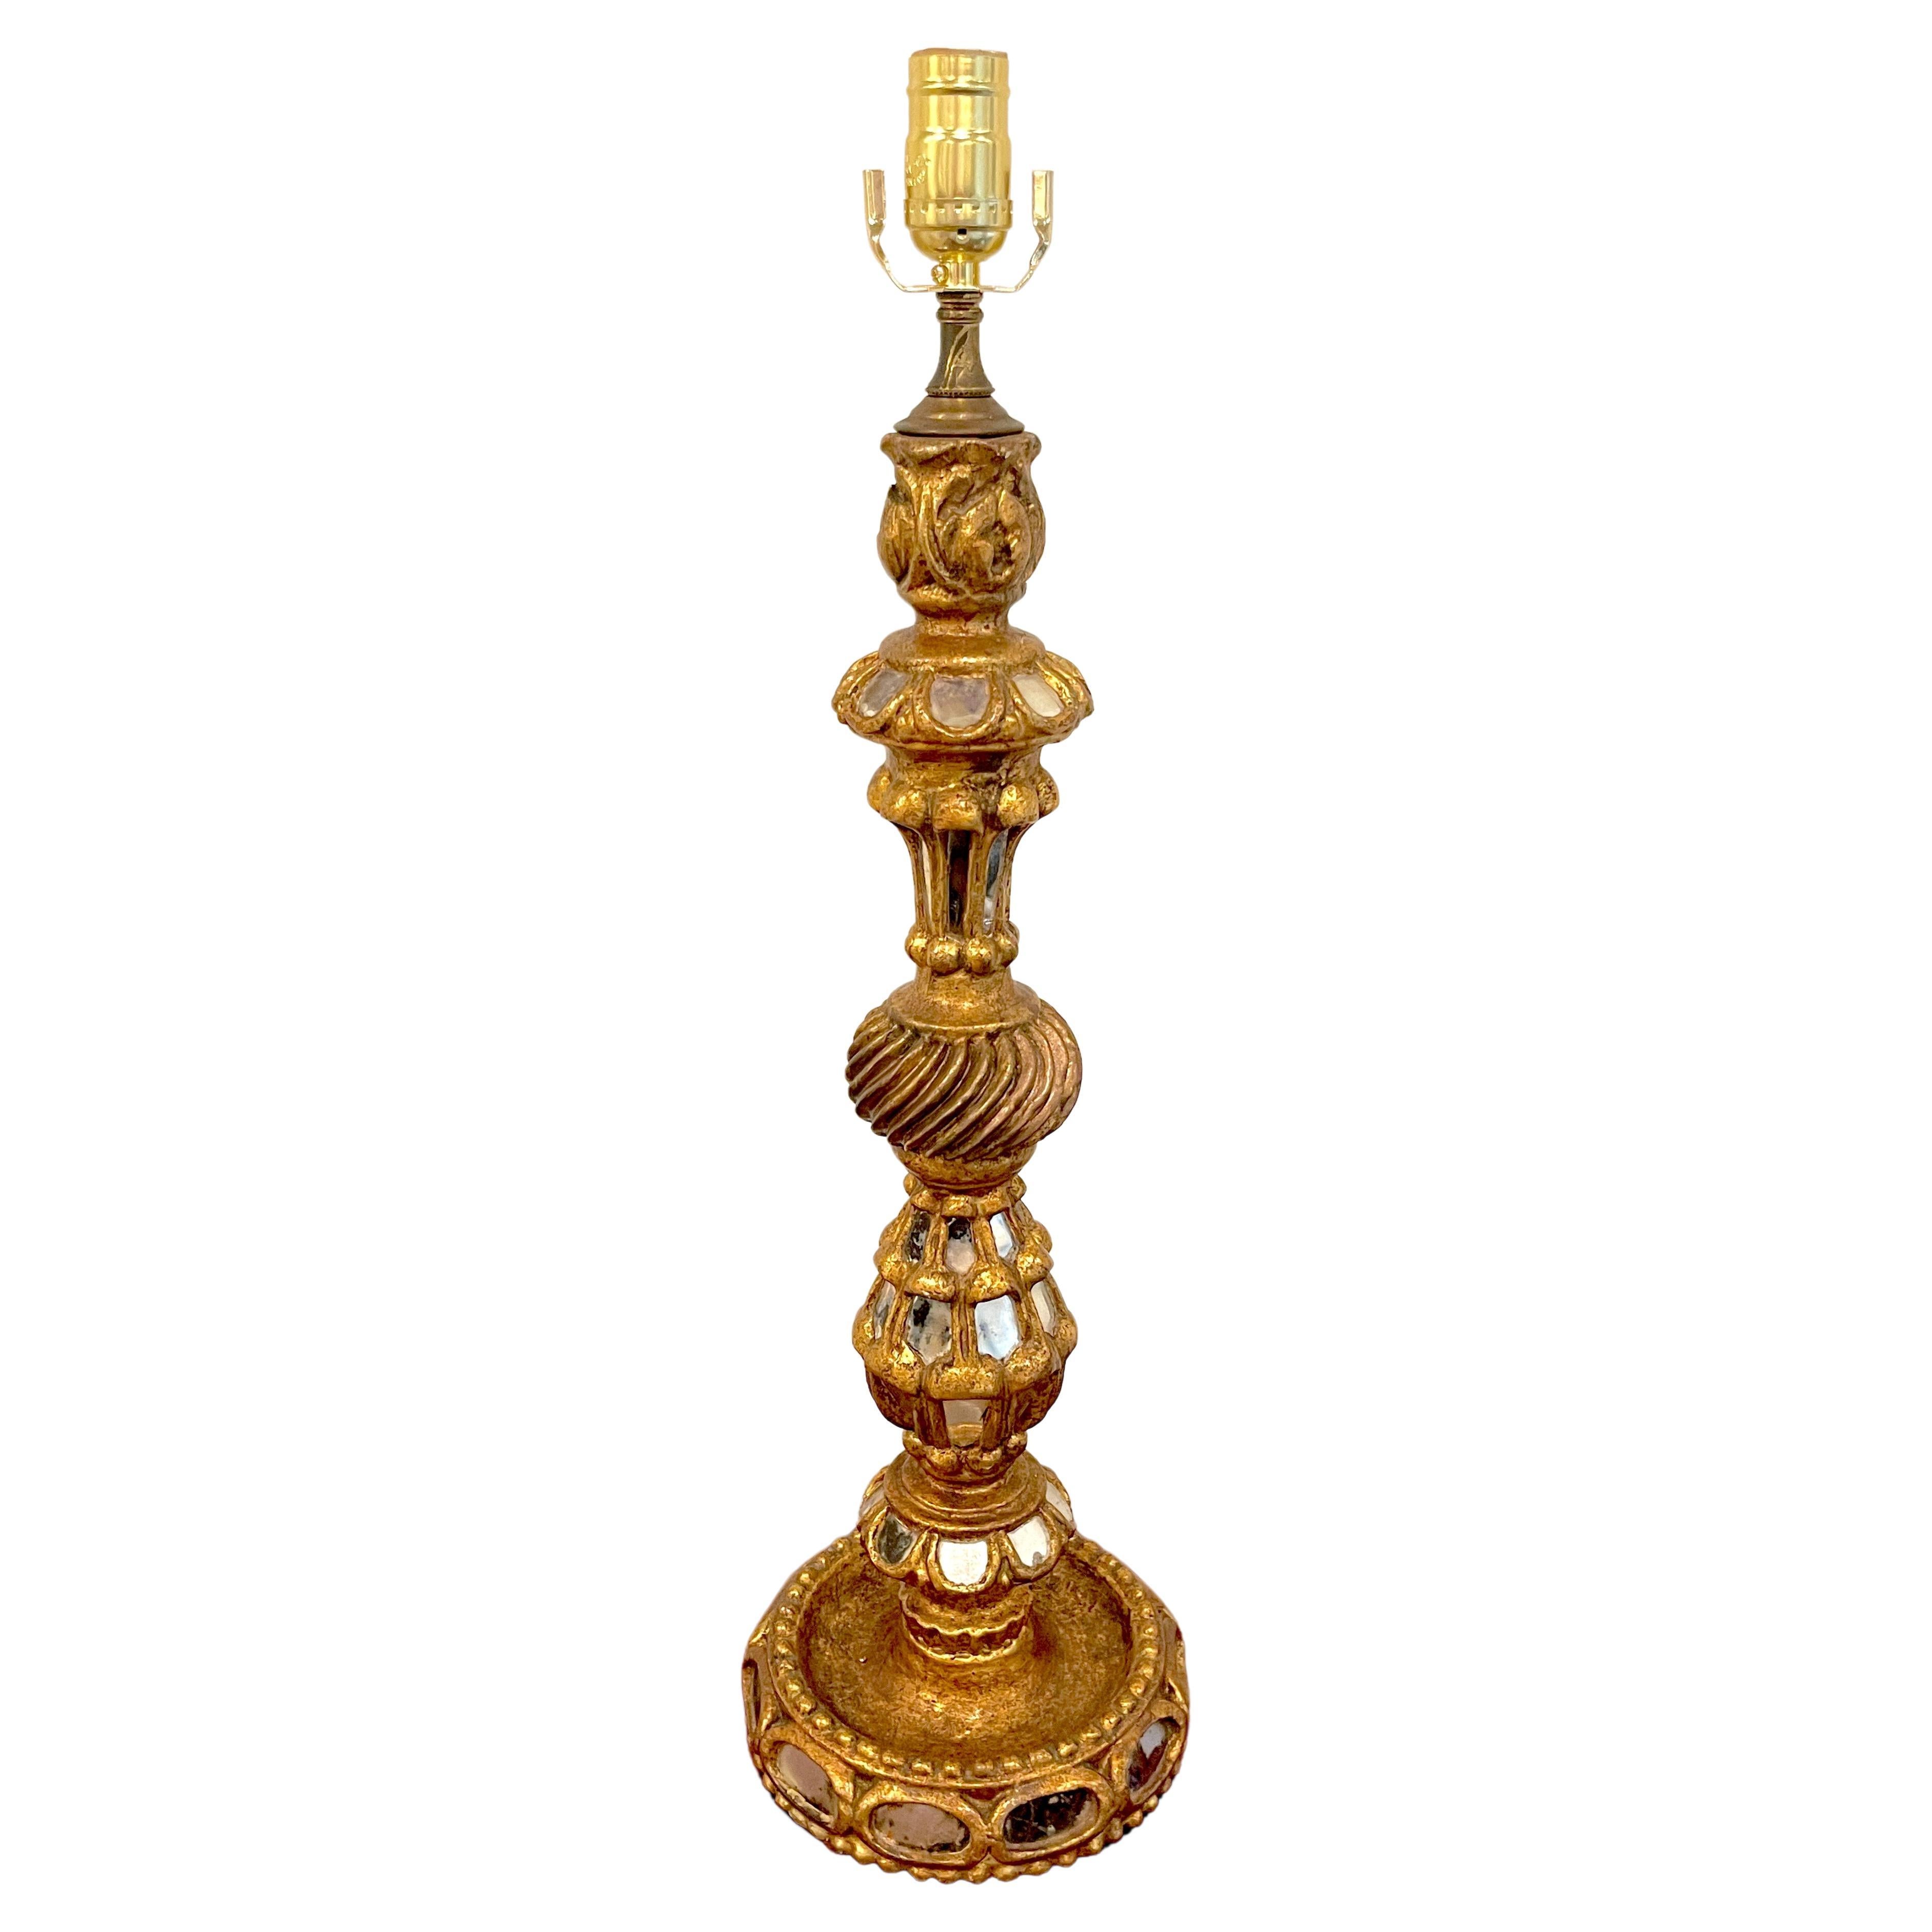 Chandelier colonial espagnol en bois doré et miroir, converti en lampe